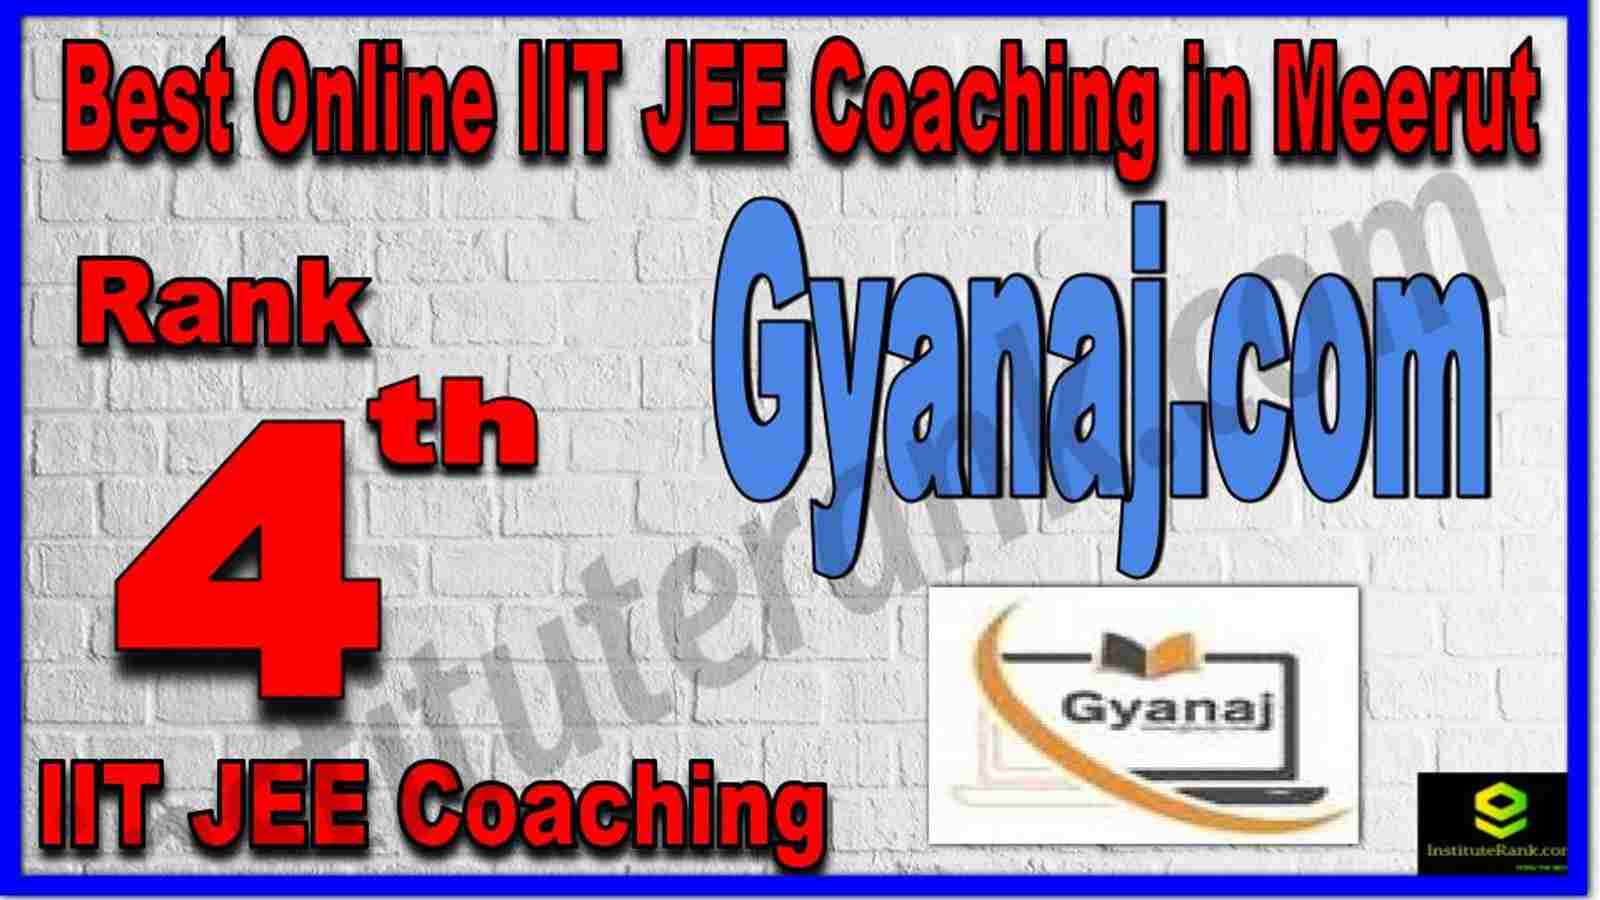 Rank 4th Best Online IIT JEE Coaching in Meerut